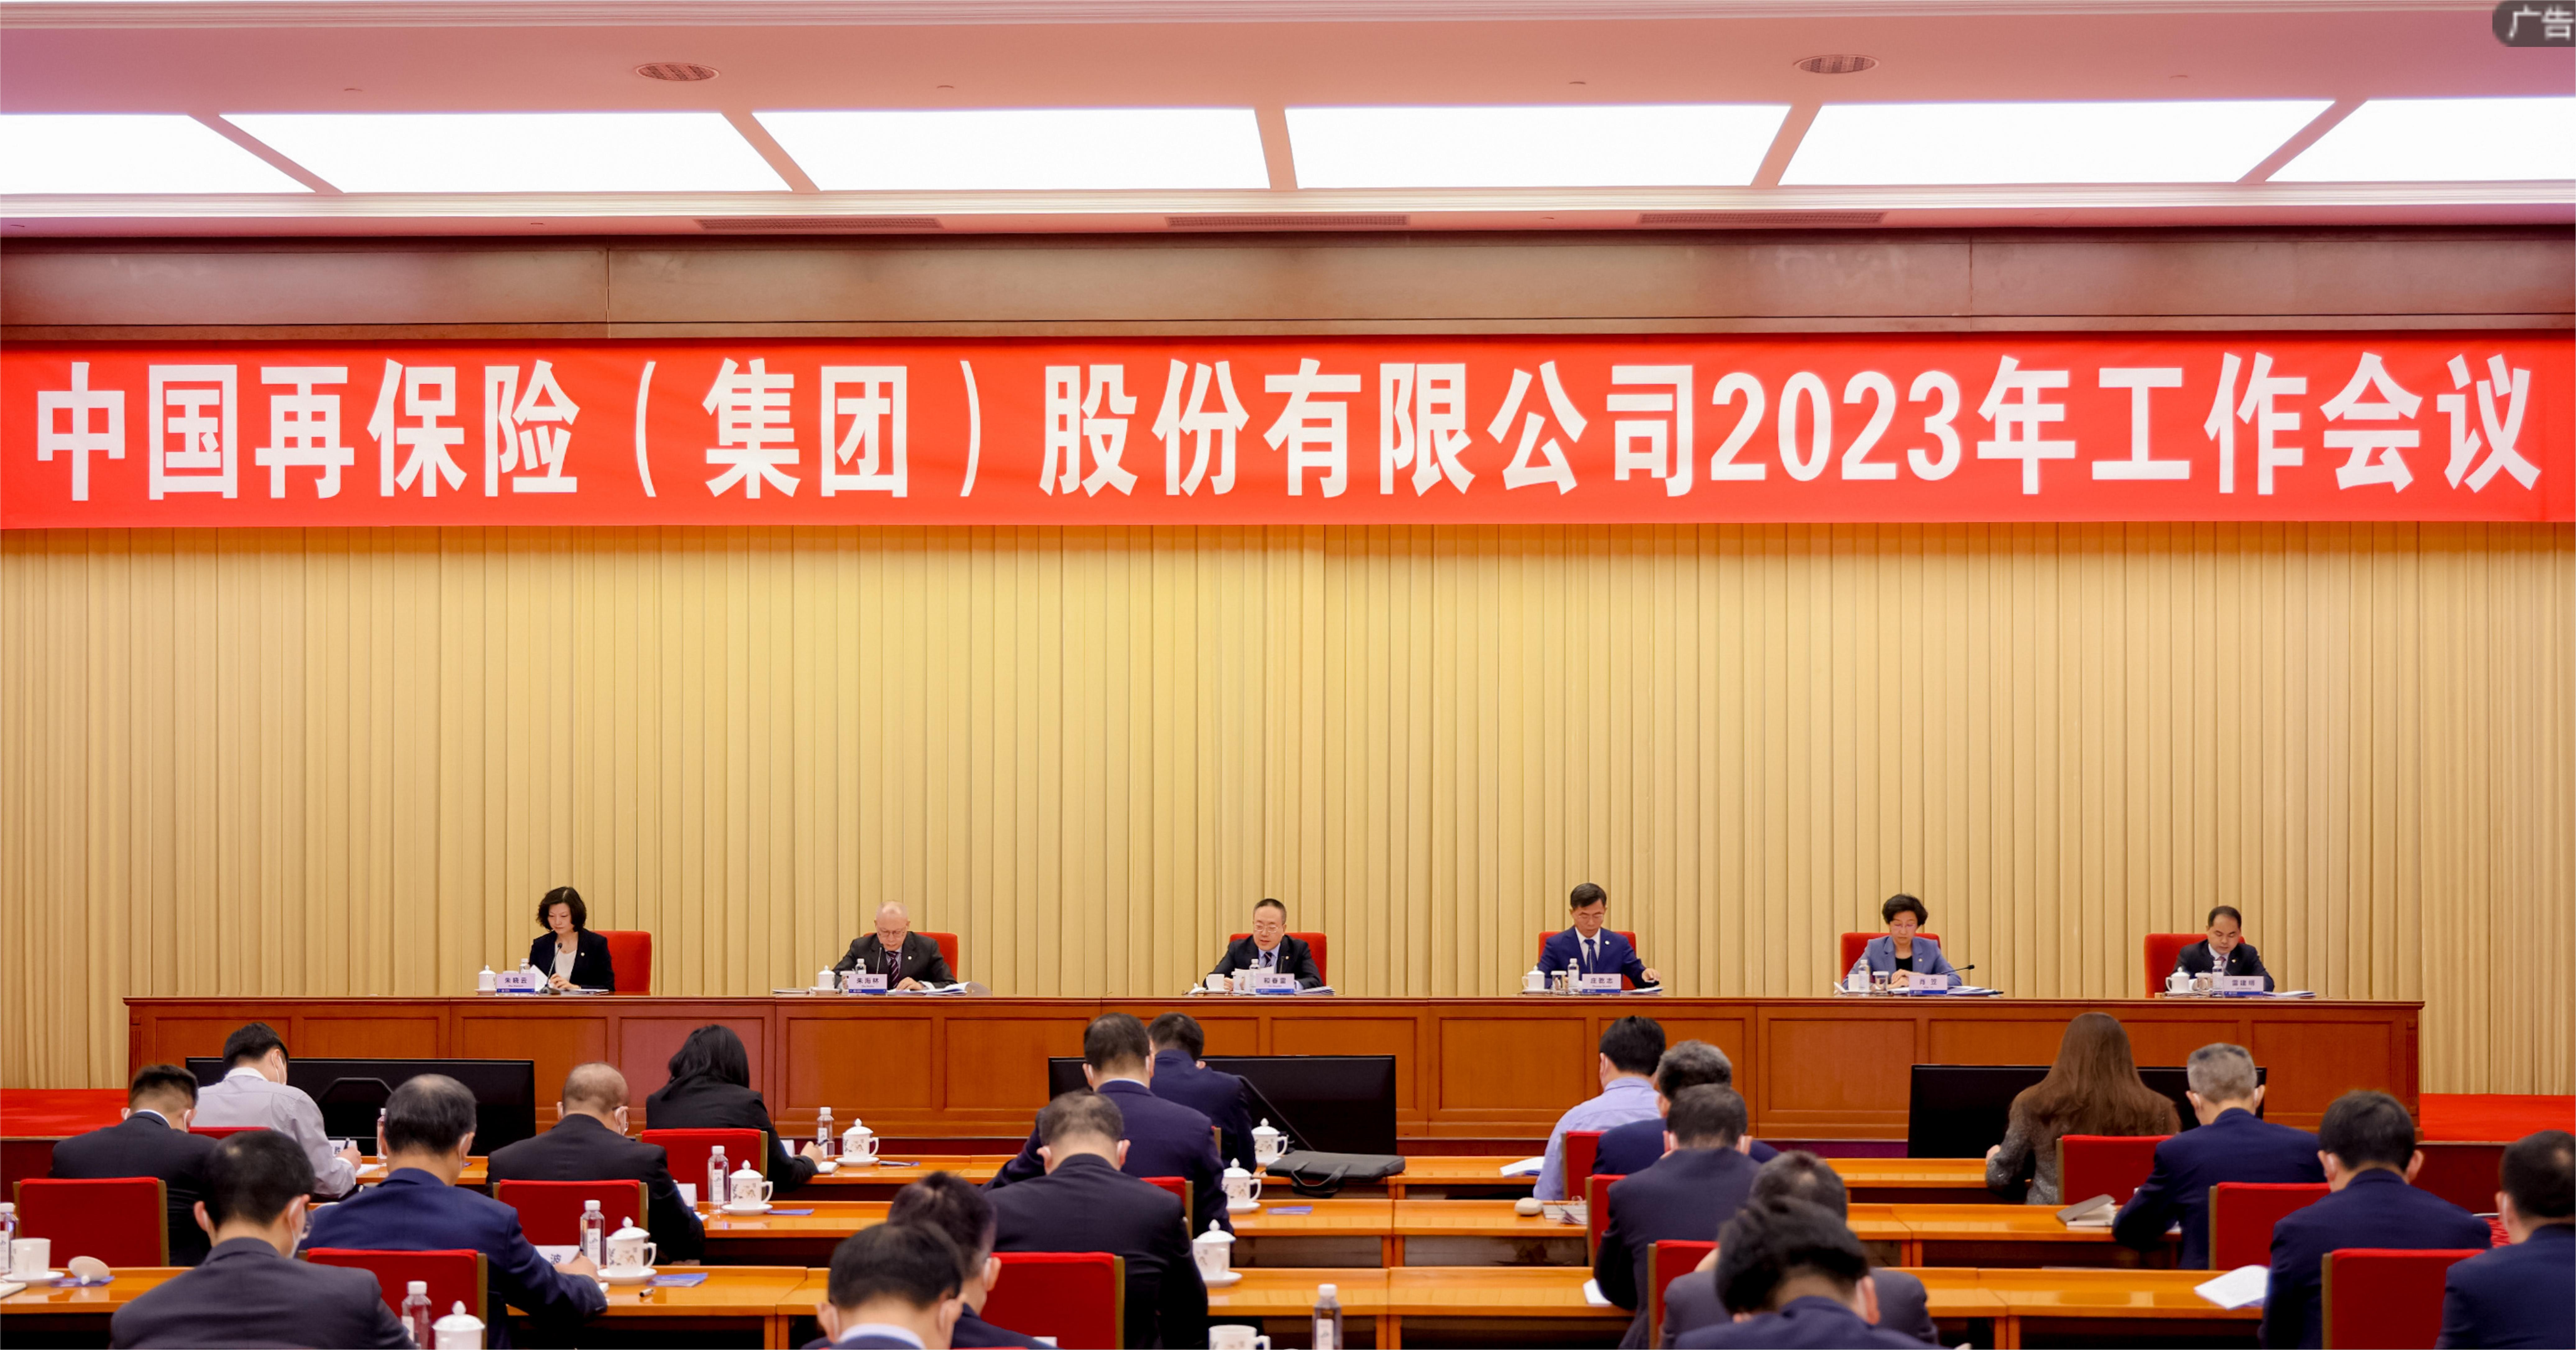 建设世界一流综合性再保险集团 中再集团召开2023年工作会议